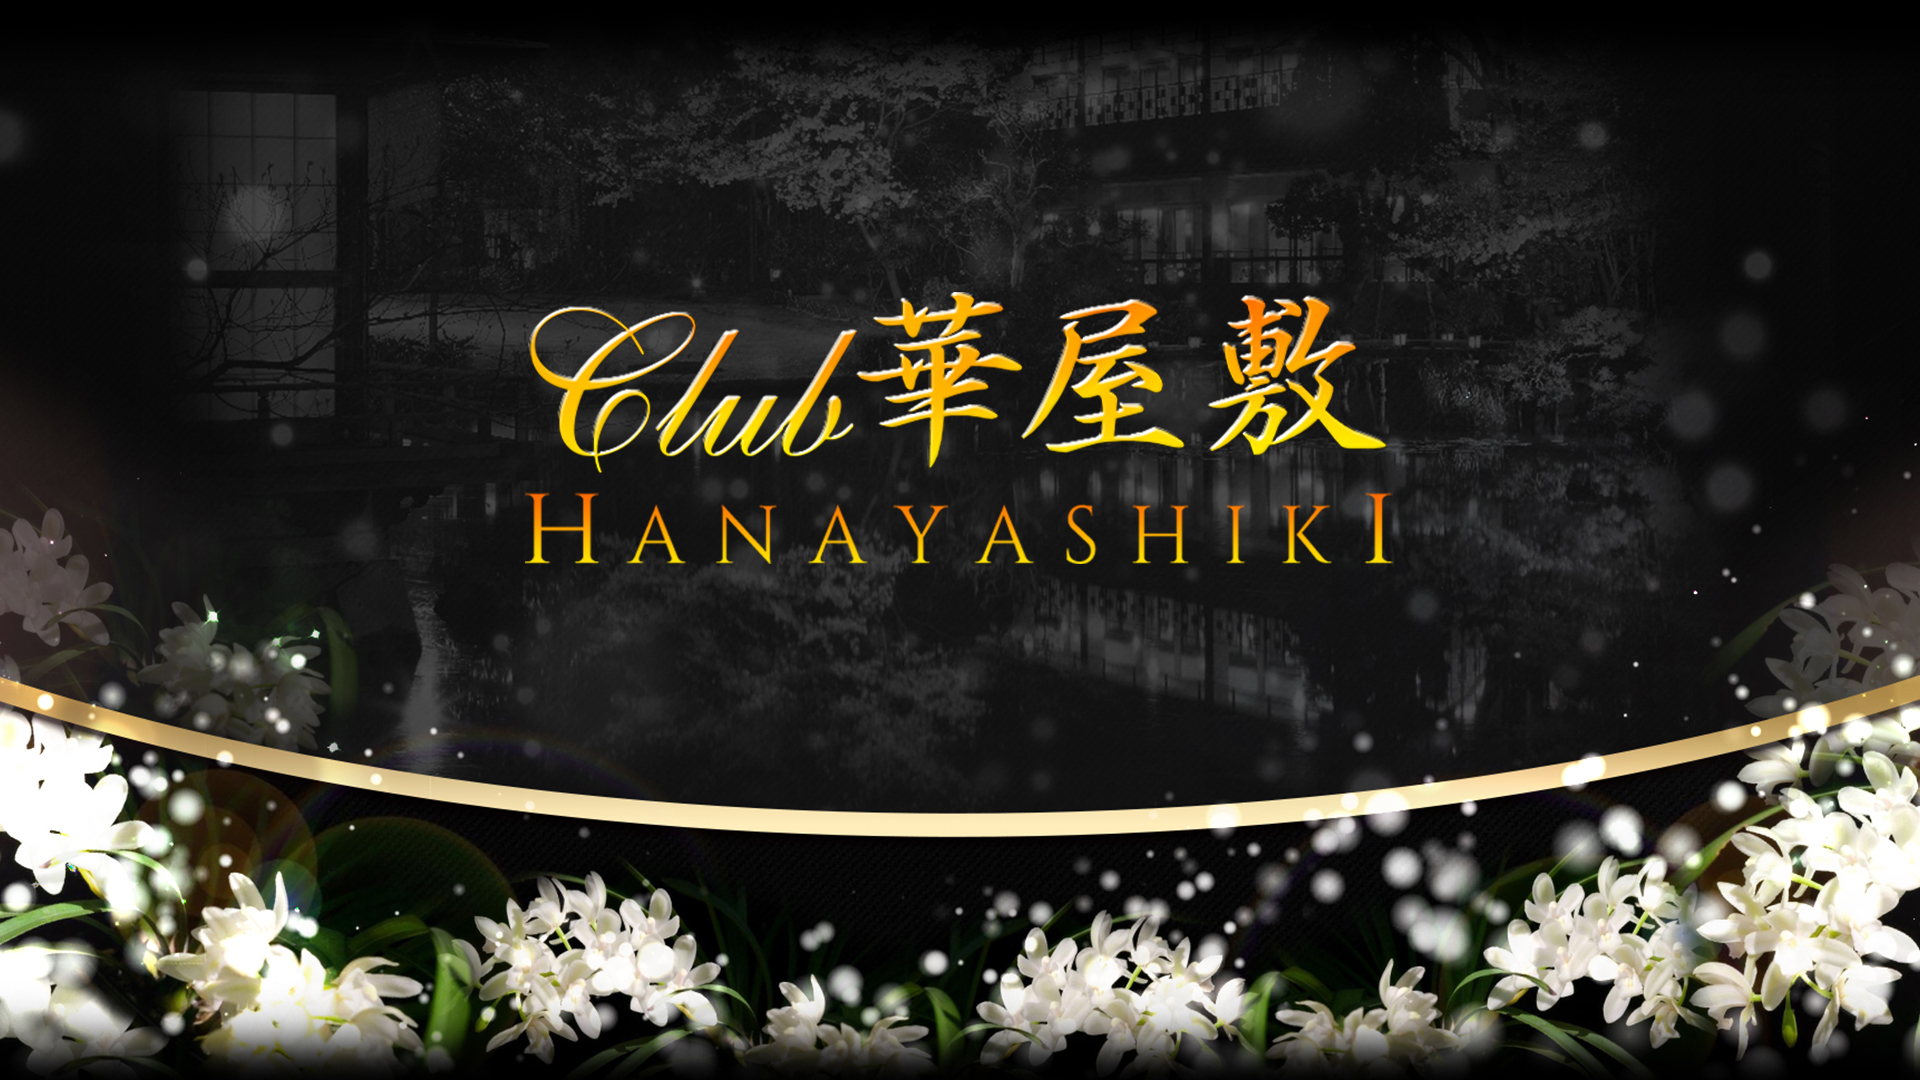 CLUB HANAYASHIKI